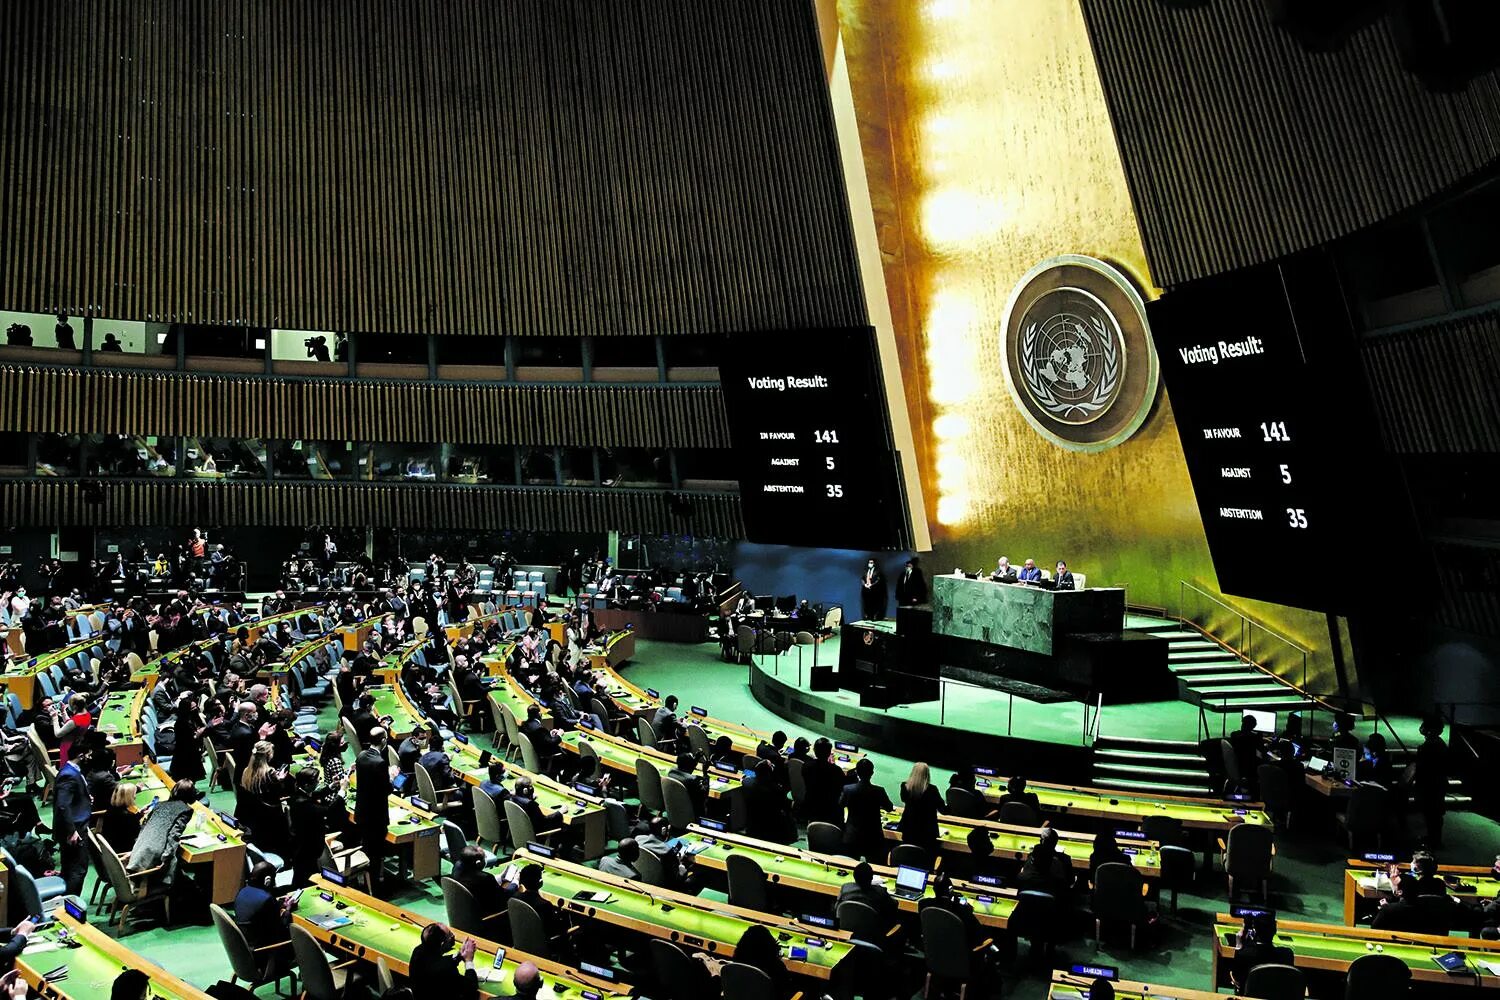 Заседание оон по украине. Генеральная Ассамблея ООН Нью-Йорк. Зал Генеральной Ассамблеи ООН. Главный зал Генассамблеи ООН. Генеральная Ассамблея ООН картинки.